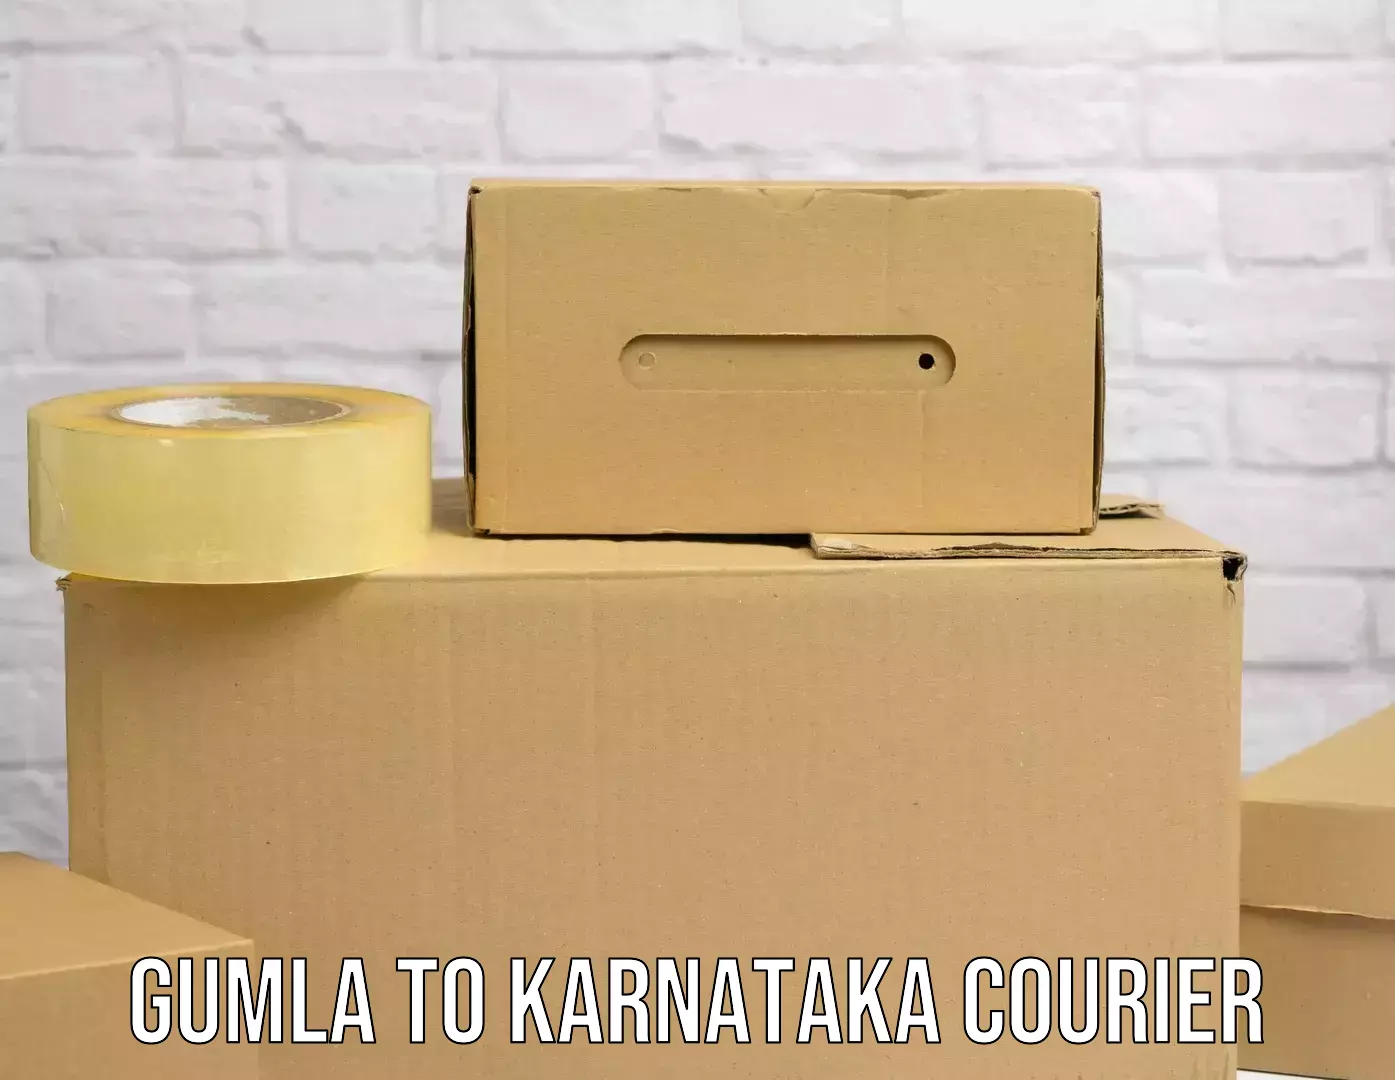 Supply chain delivery in Gumla to Raichur